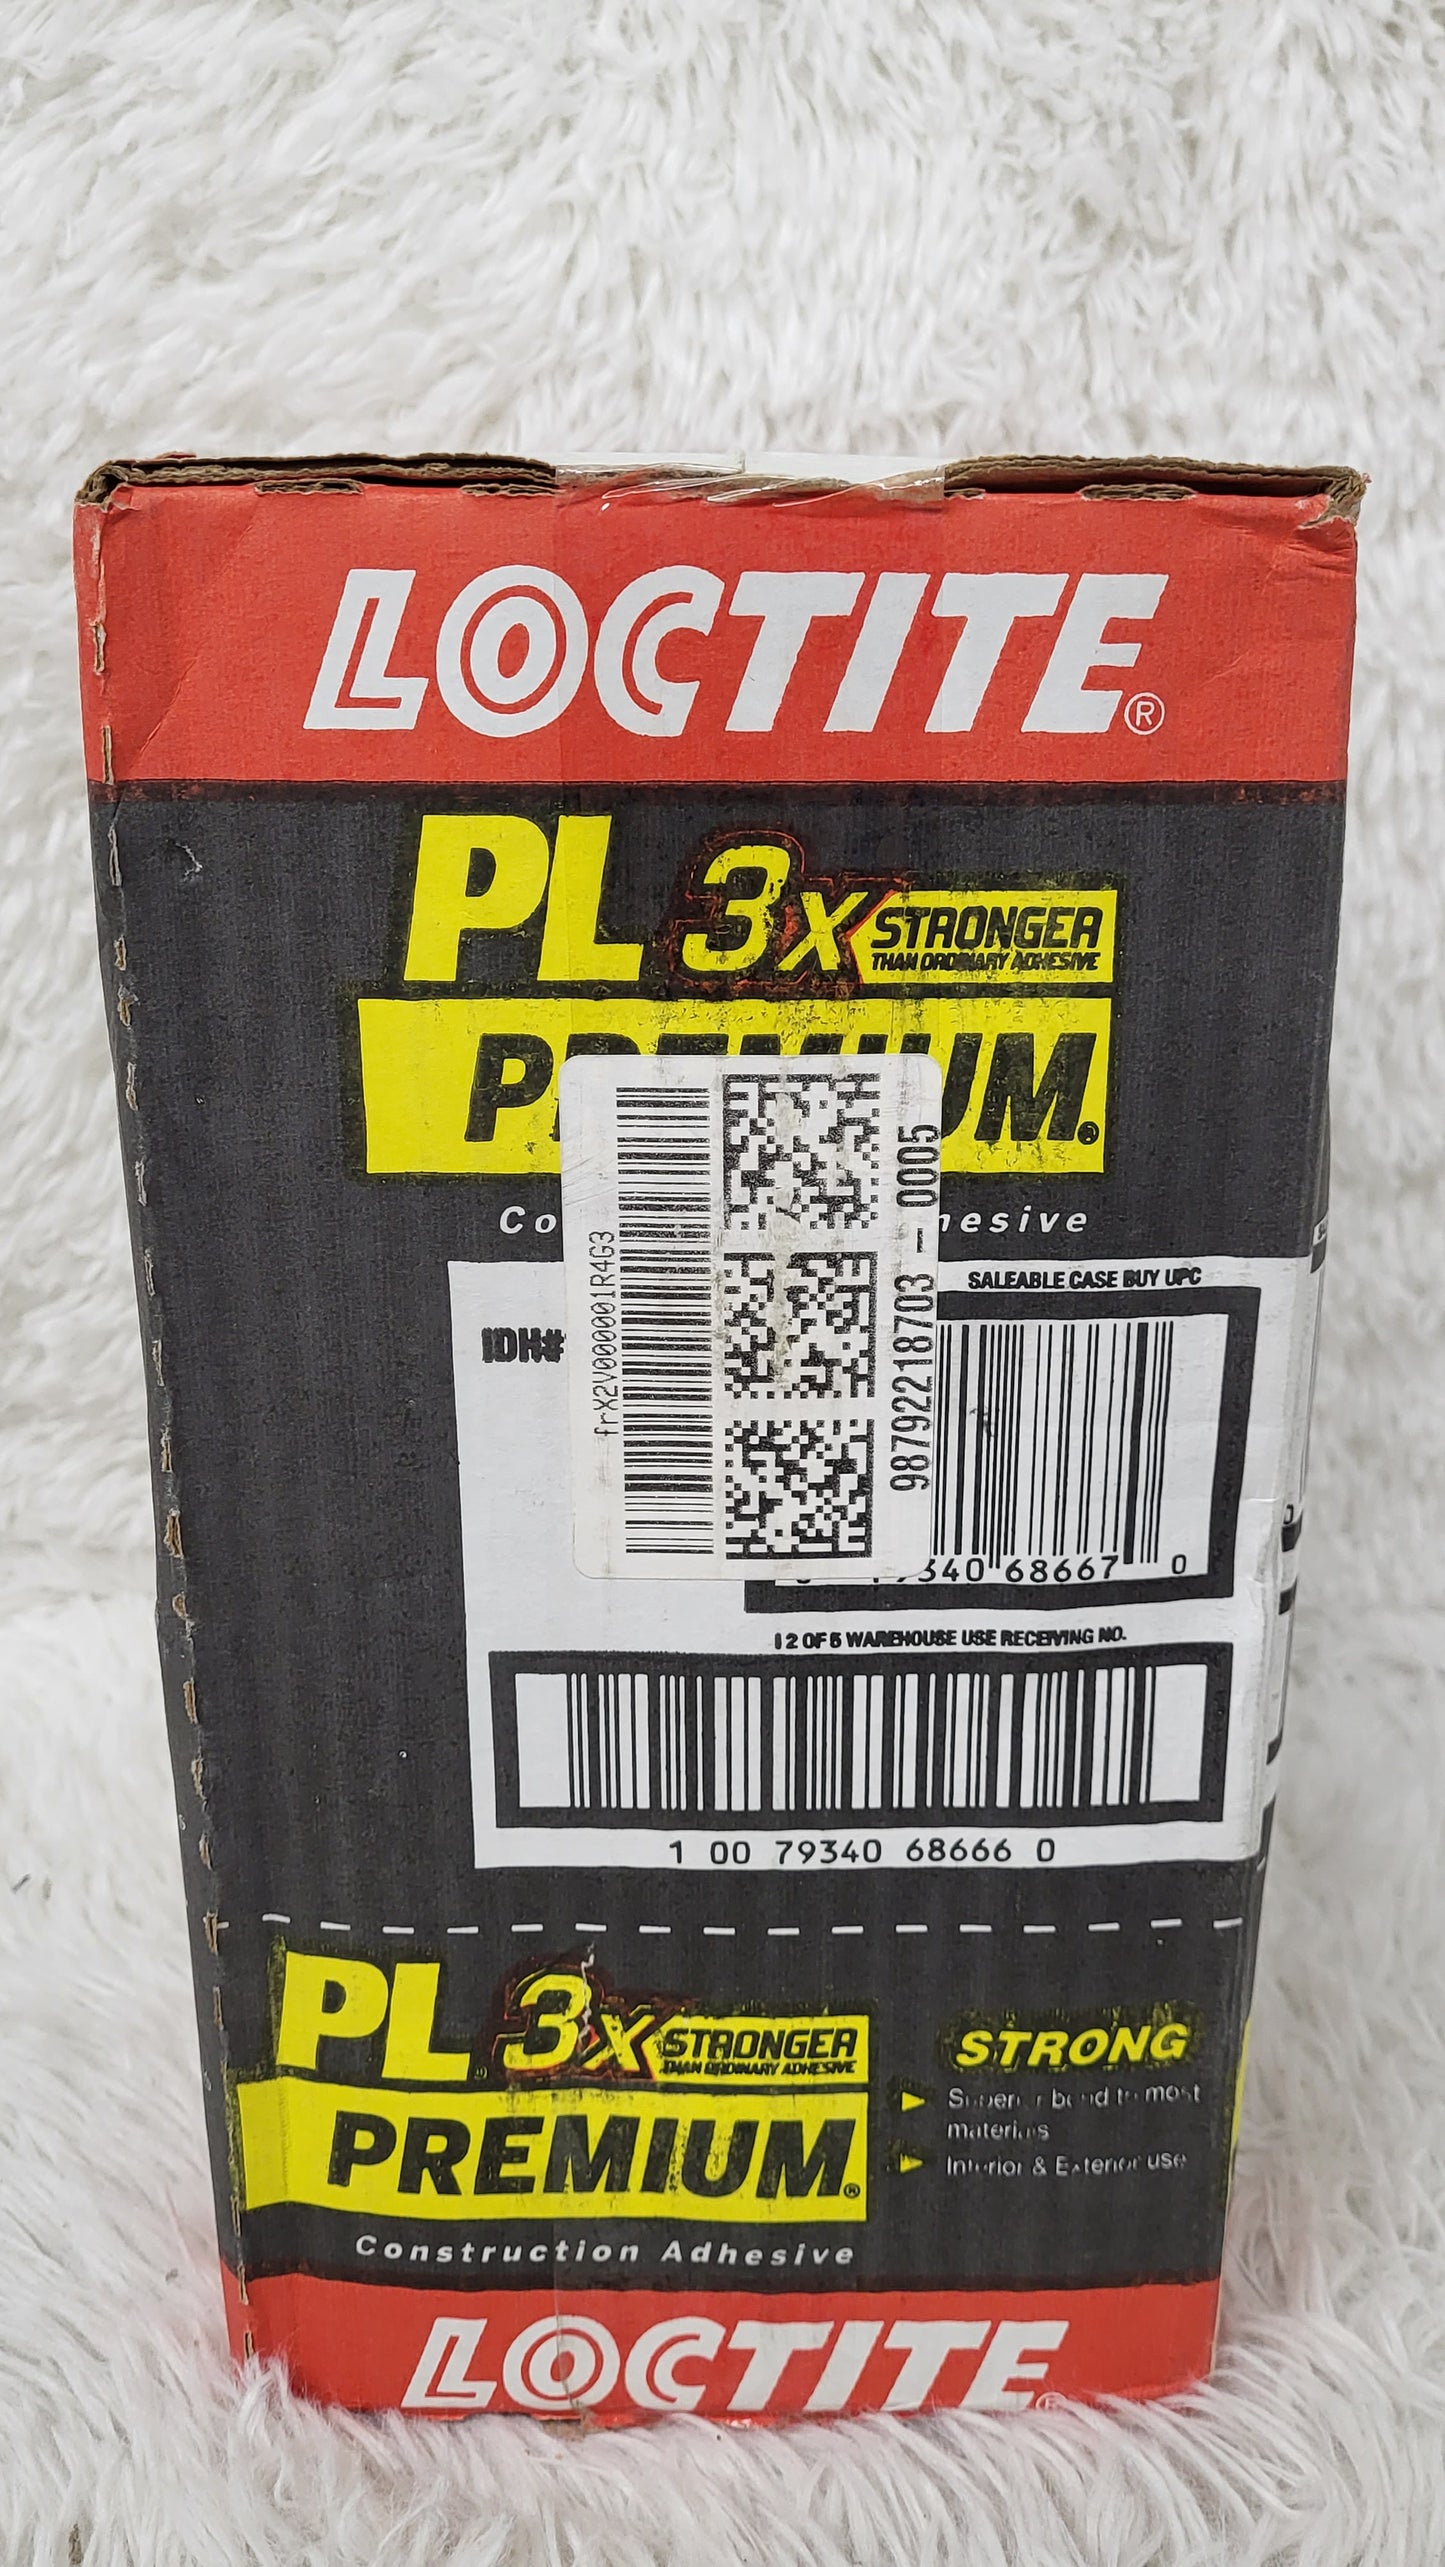 LOCTITE PL Premium 3x 12-Pack Brown Polyurethane Interior/Exterior Construction